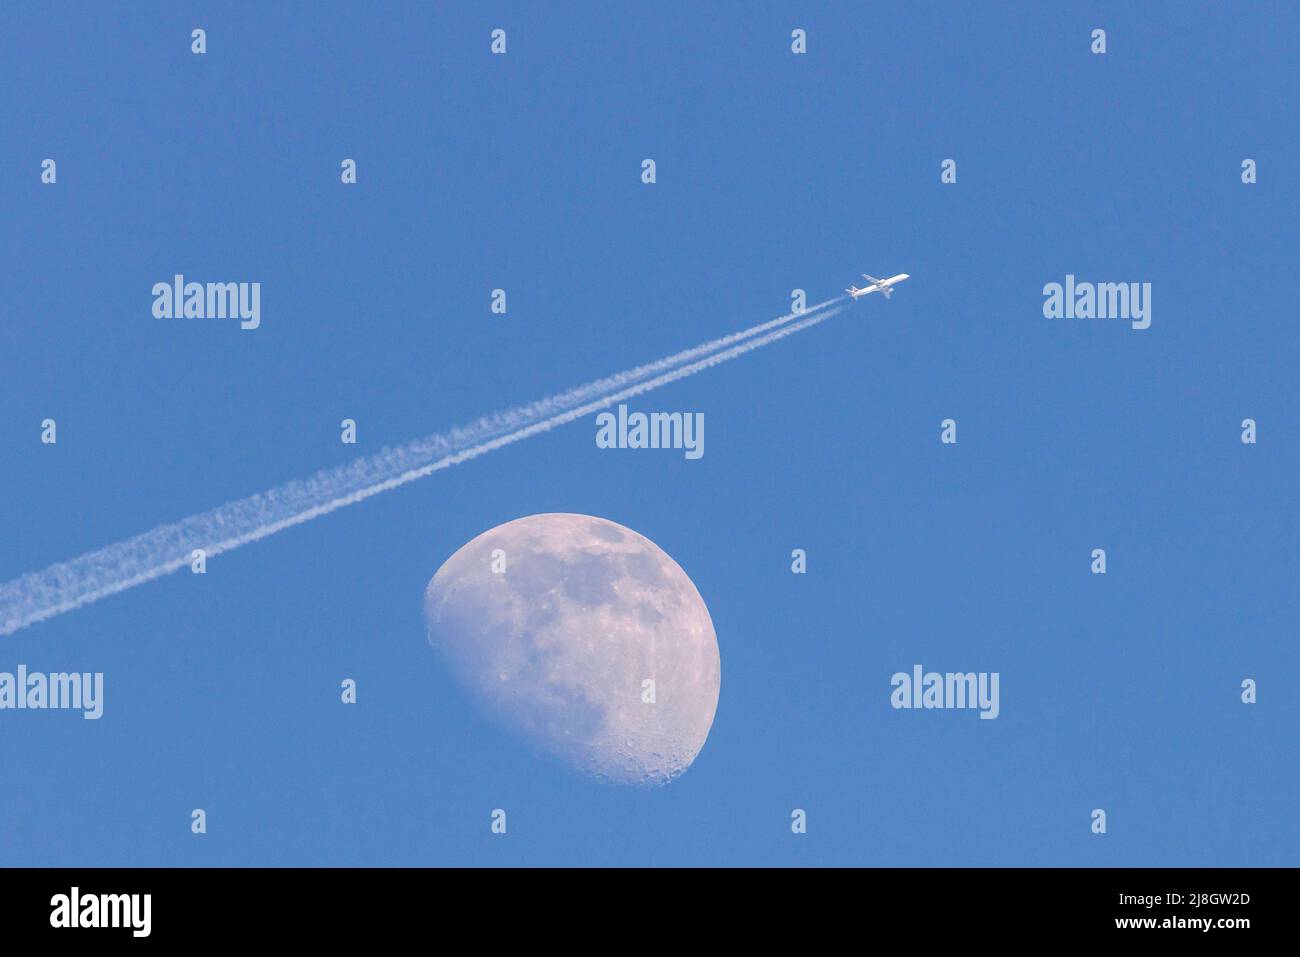 Weißer Mond am Tag auf einem blauen wolkenlosen Himmel. Ein Flugzeug fliegt über den Mond und hinterlässt eine Spur von Kondensation. Stockfoto